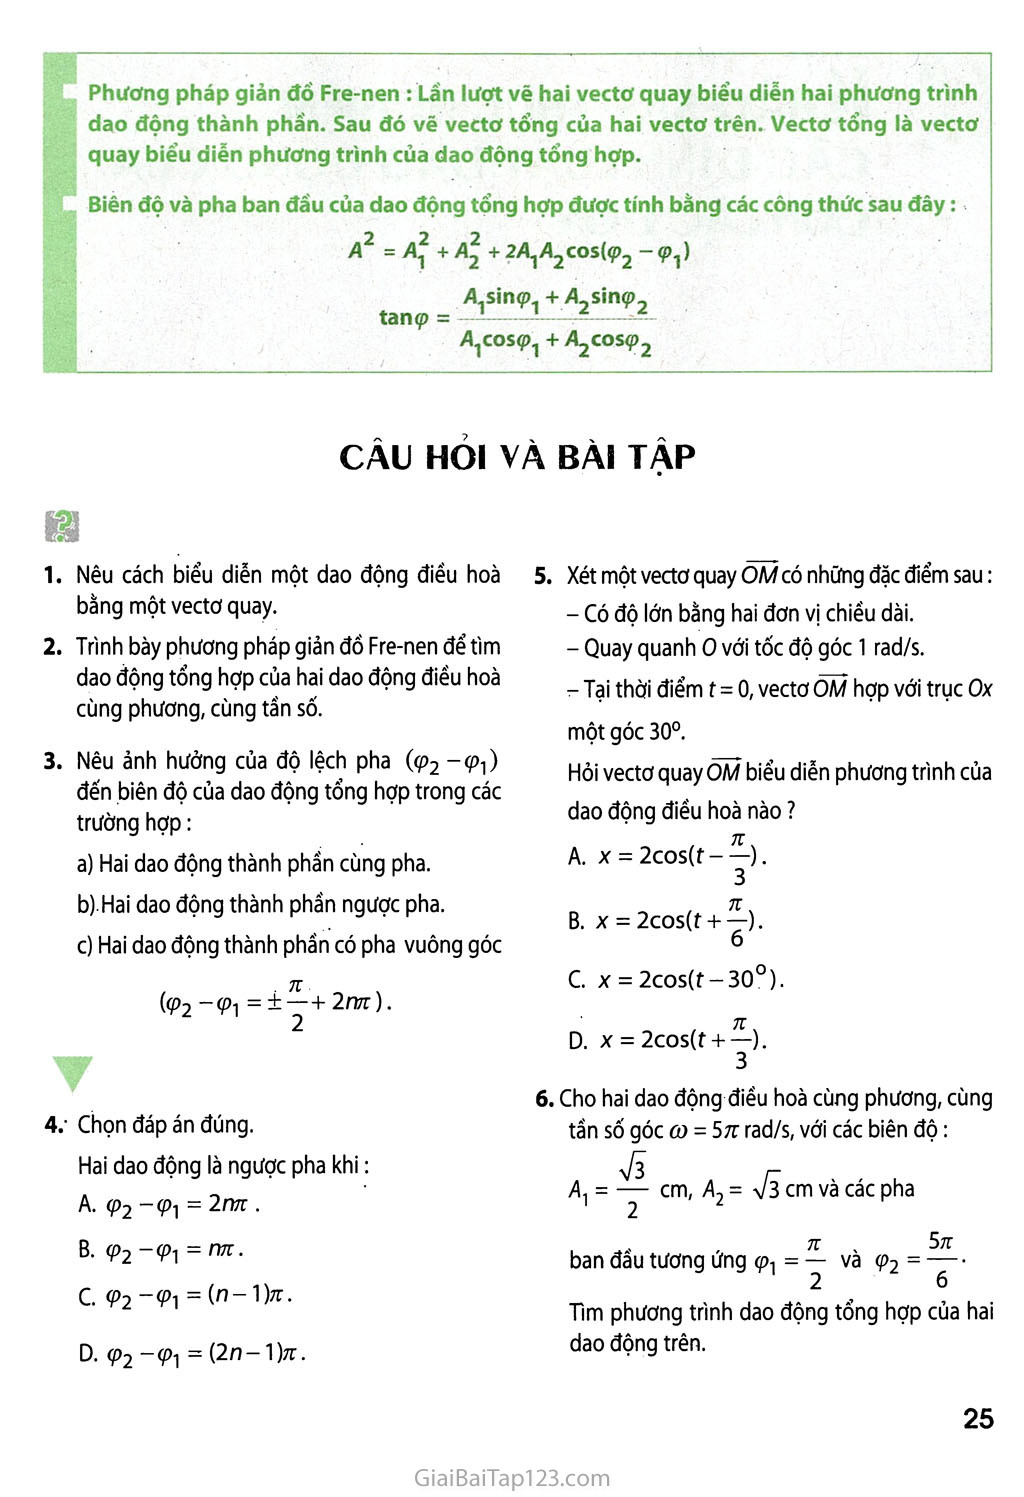 Bài 5. Tổng hợp hai dao động điều hoà cùng phương, cùng tần số. Phương pháp giản đồ Fre-nen trang 4